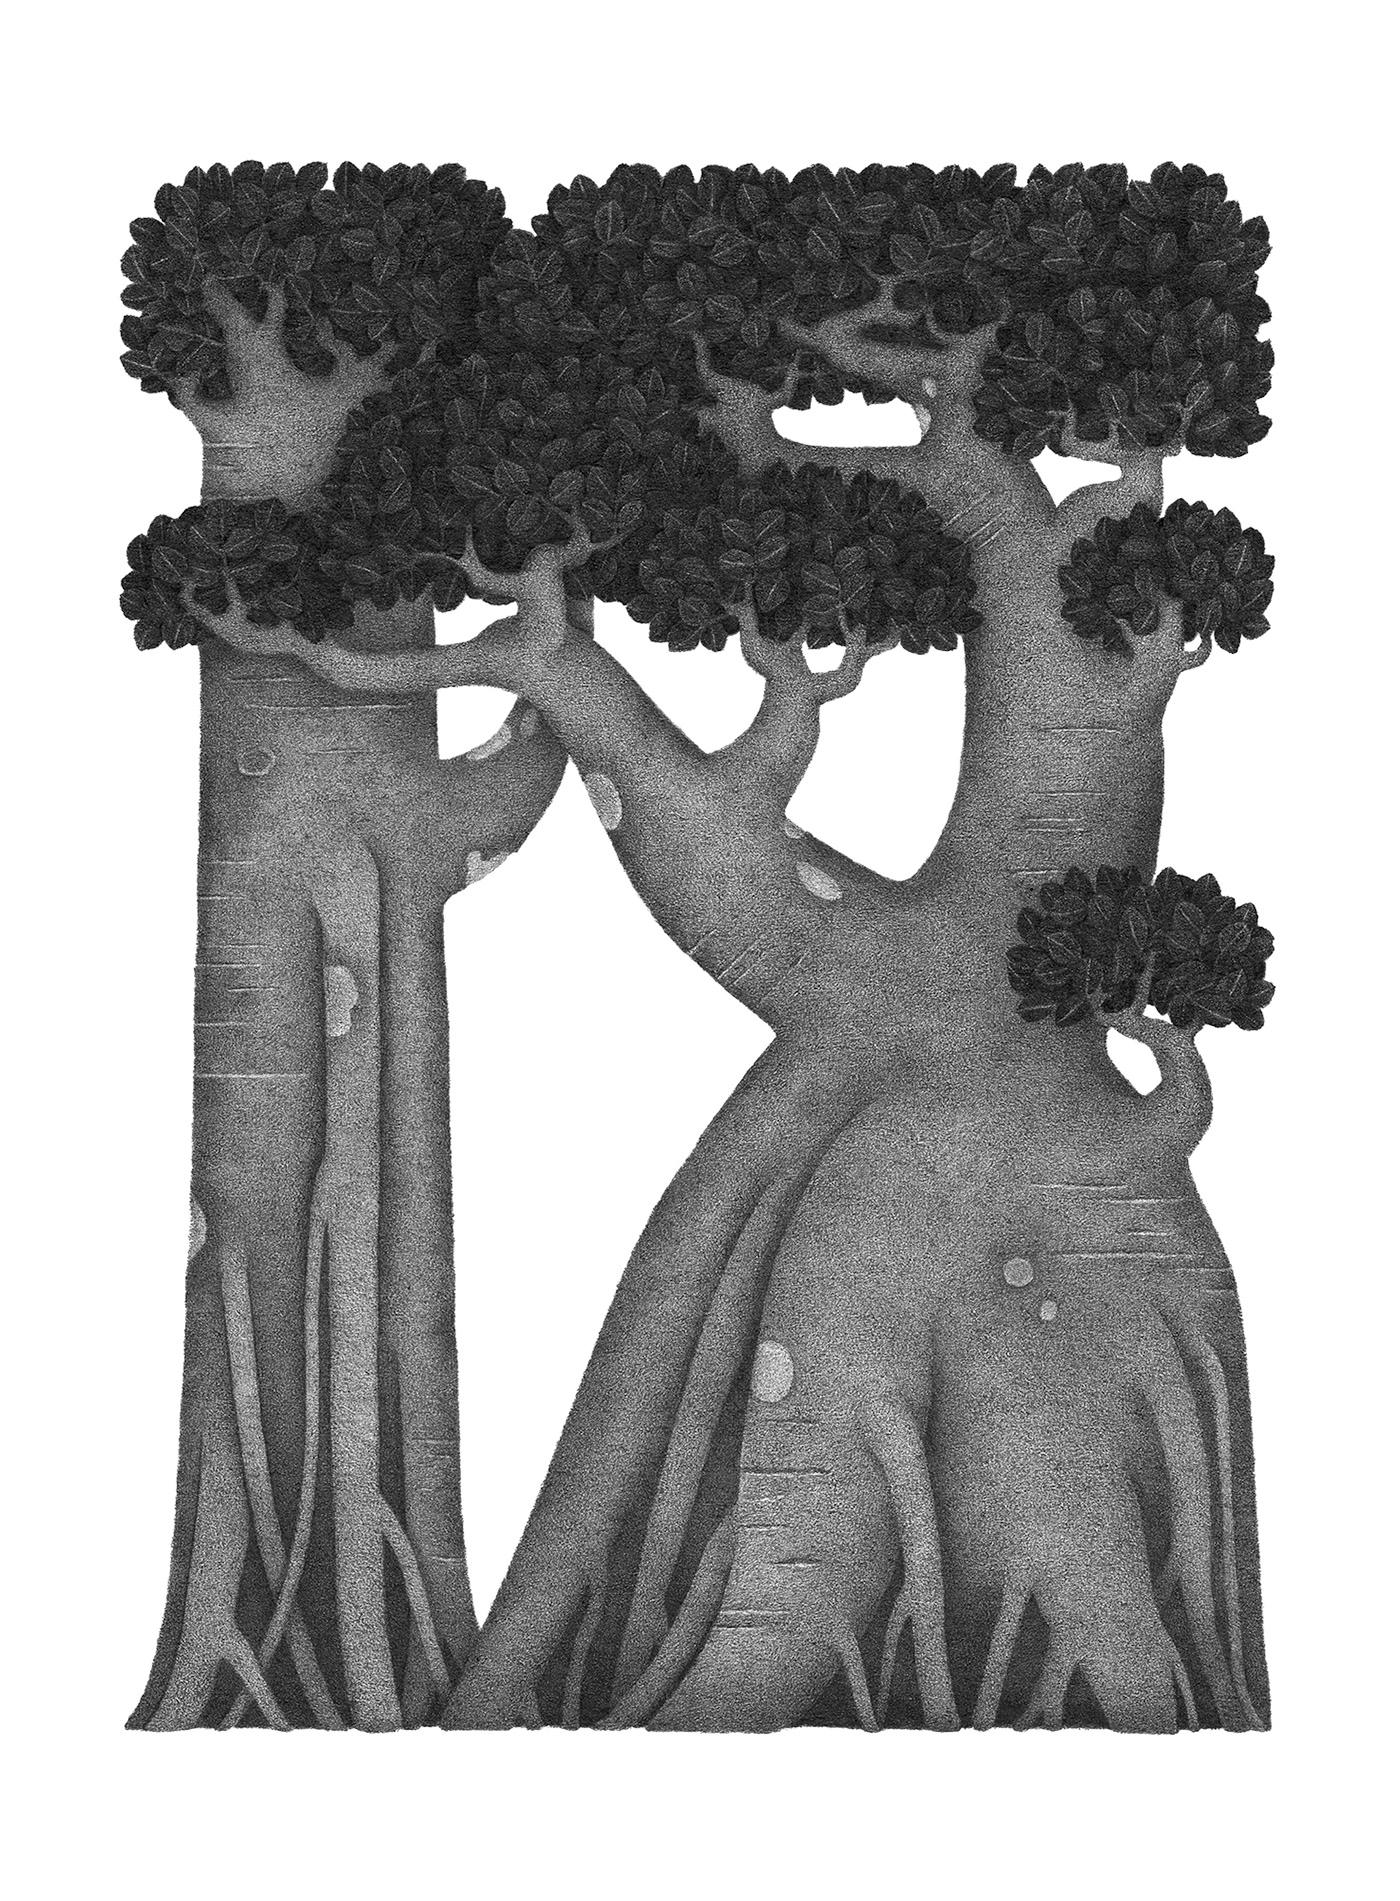 botanical illustration ILLUSTRATION  Illustrator monochrome pencil plants Tree  tropic tropical tree 鉛筆